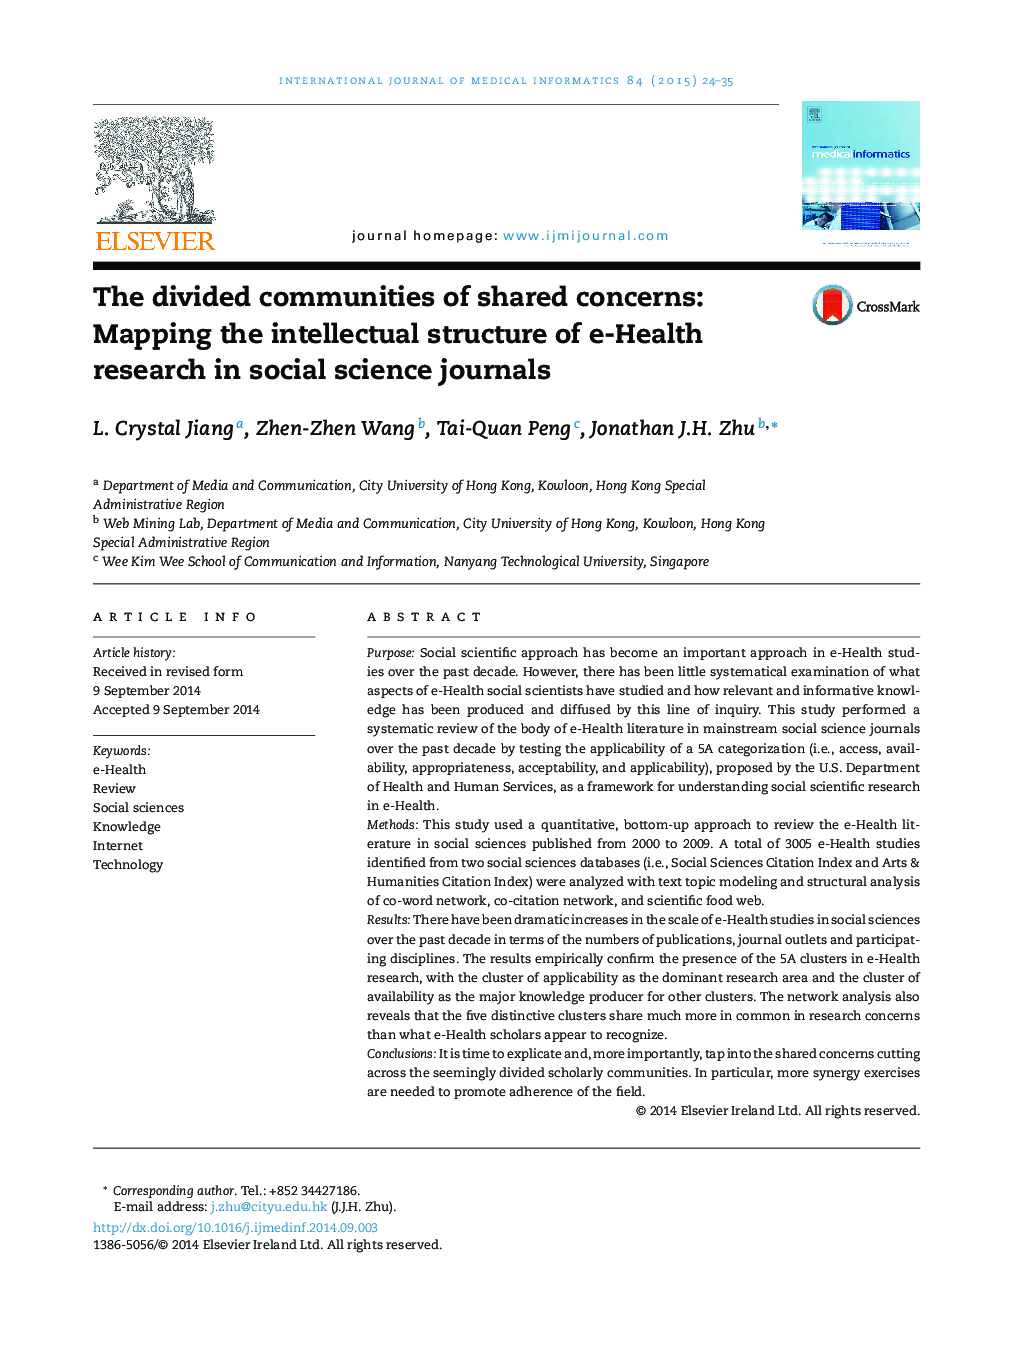 جوامع تقسیم شده از نگرانی های مشترک: نقشه برداری ساختار فکری پژوهش های سلامت الکترونیکی در نشریات علوم اجتماعی